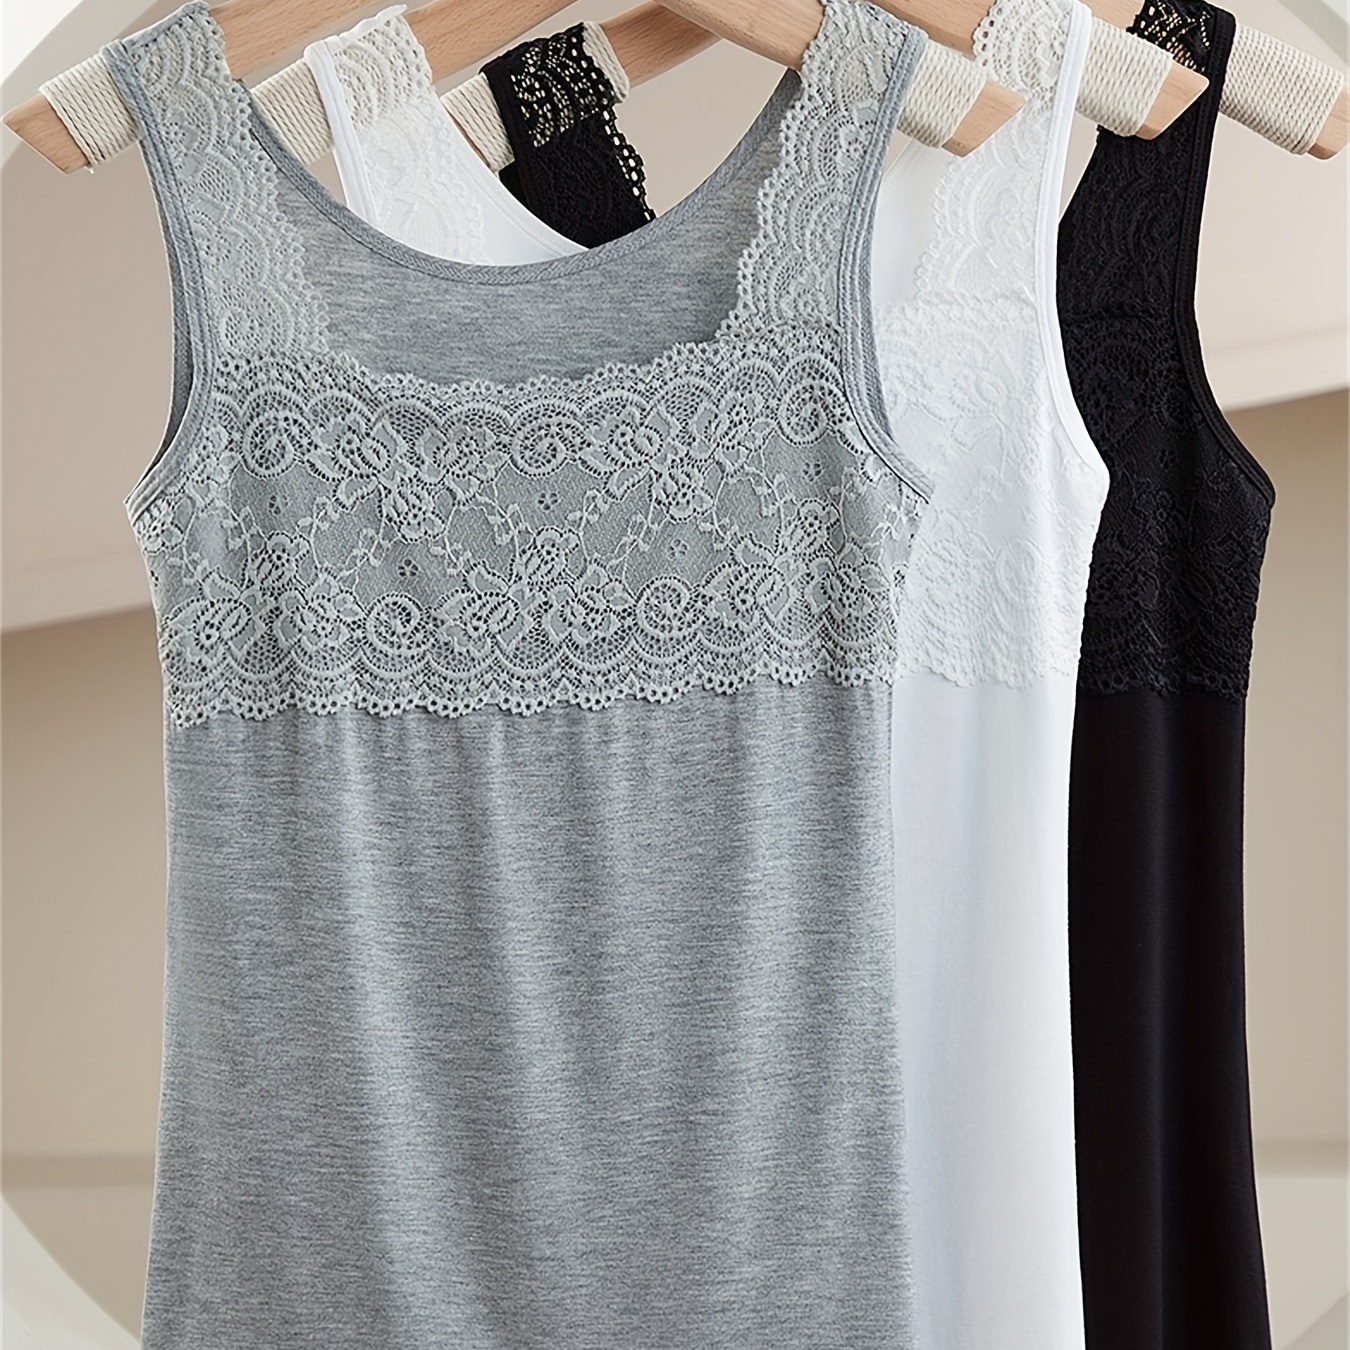 

3pcs Simple Solid Contrast Lace Tank Top, All-match Vest Top, Women's Lingerie & Underwear